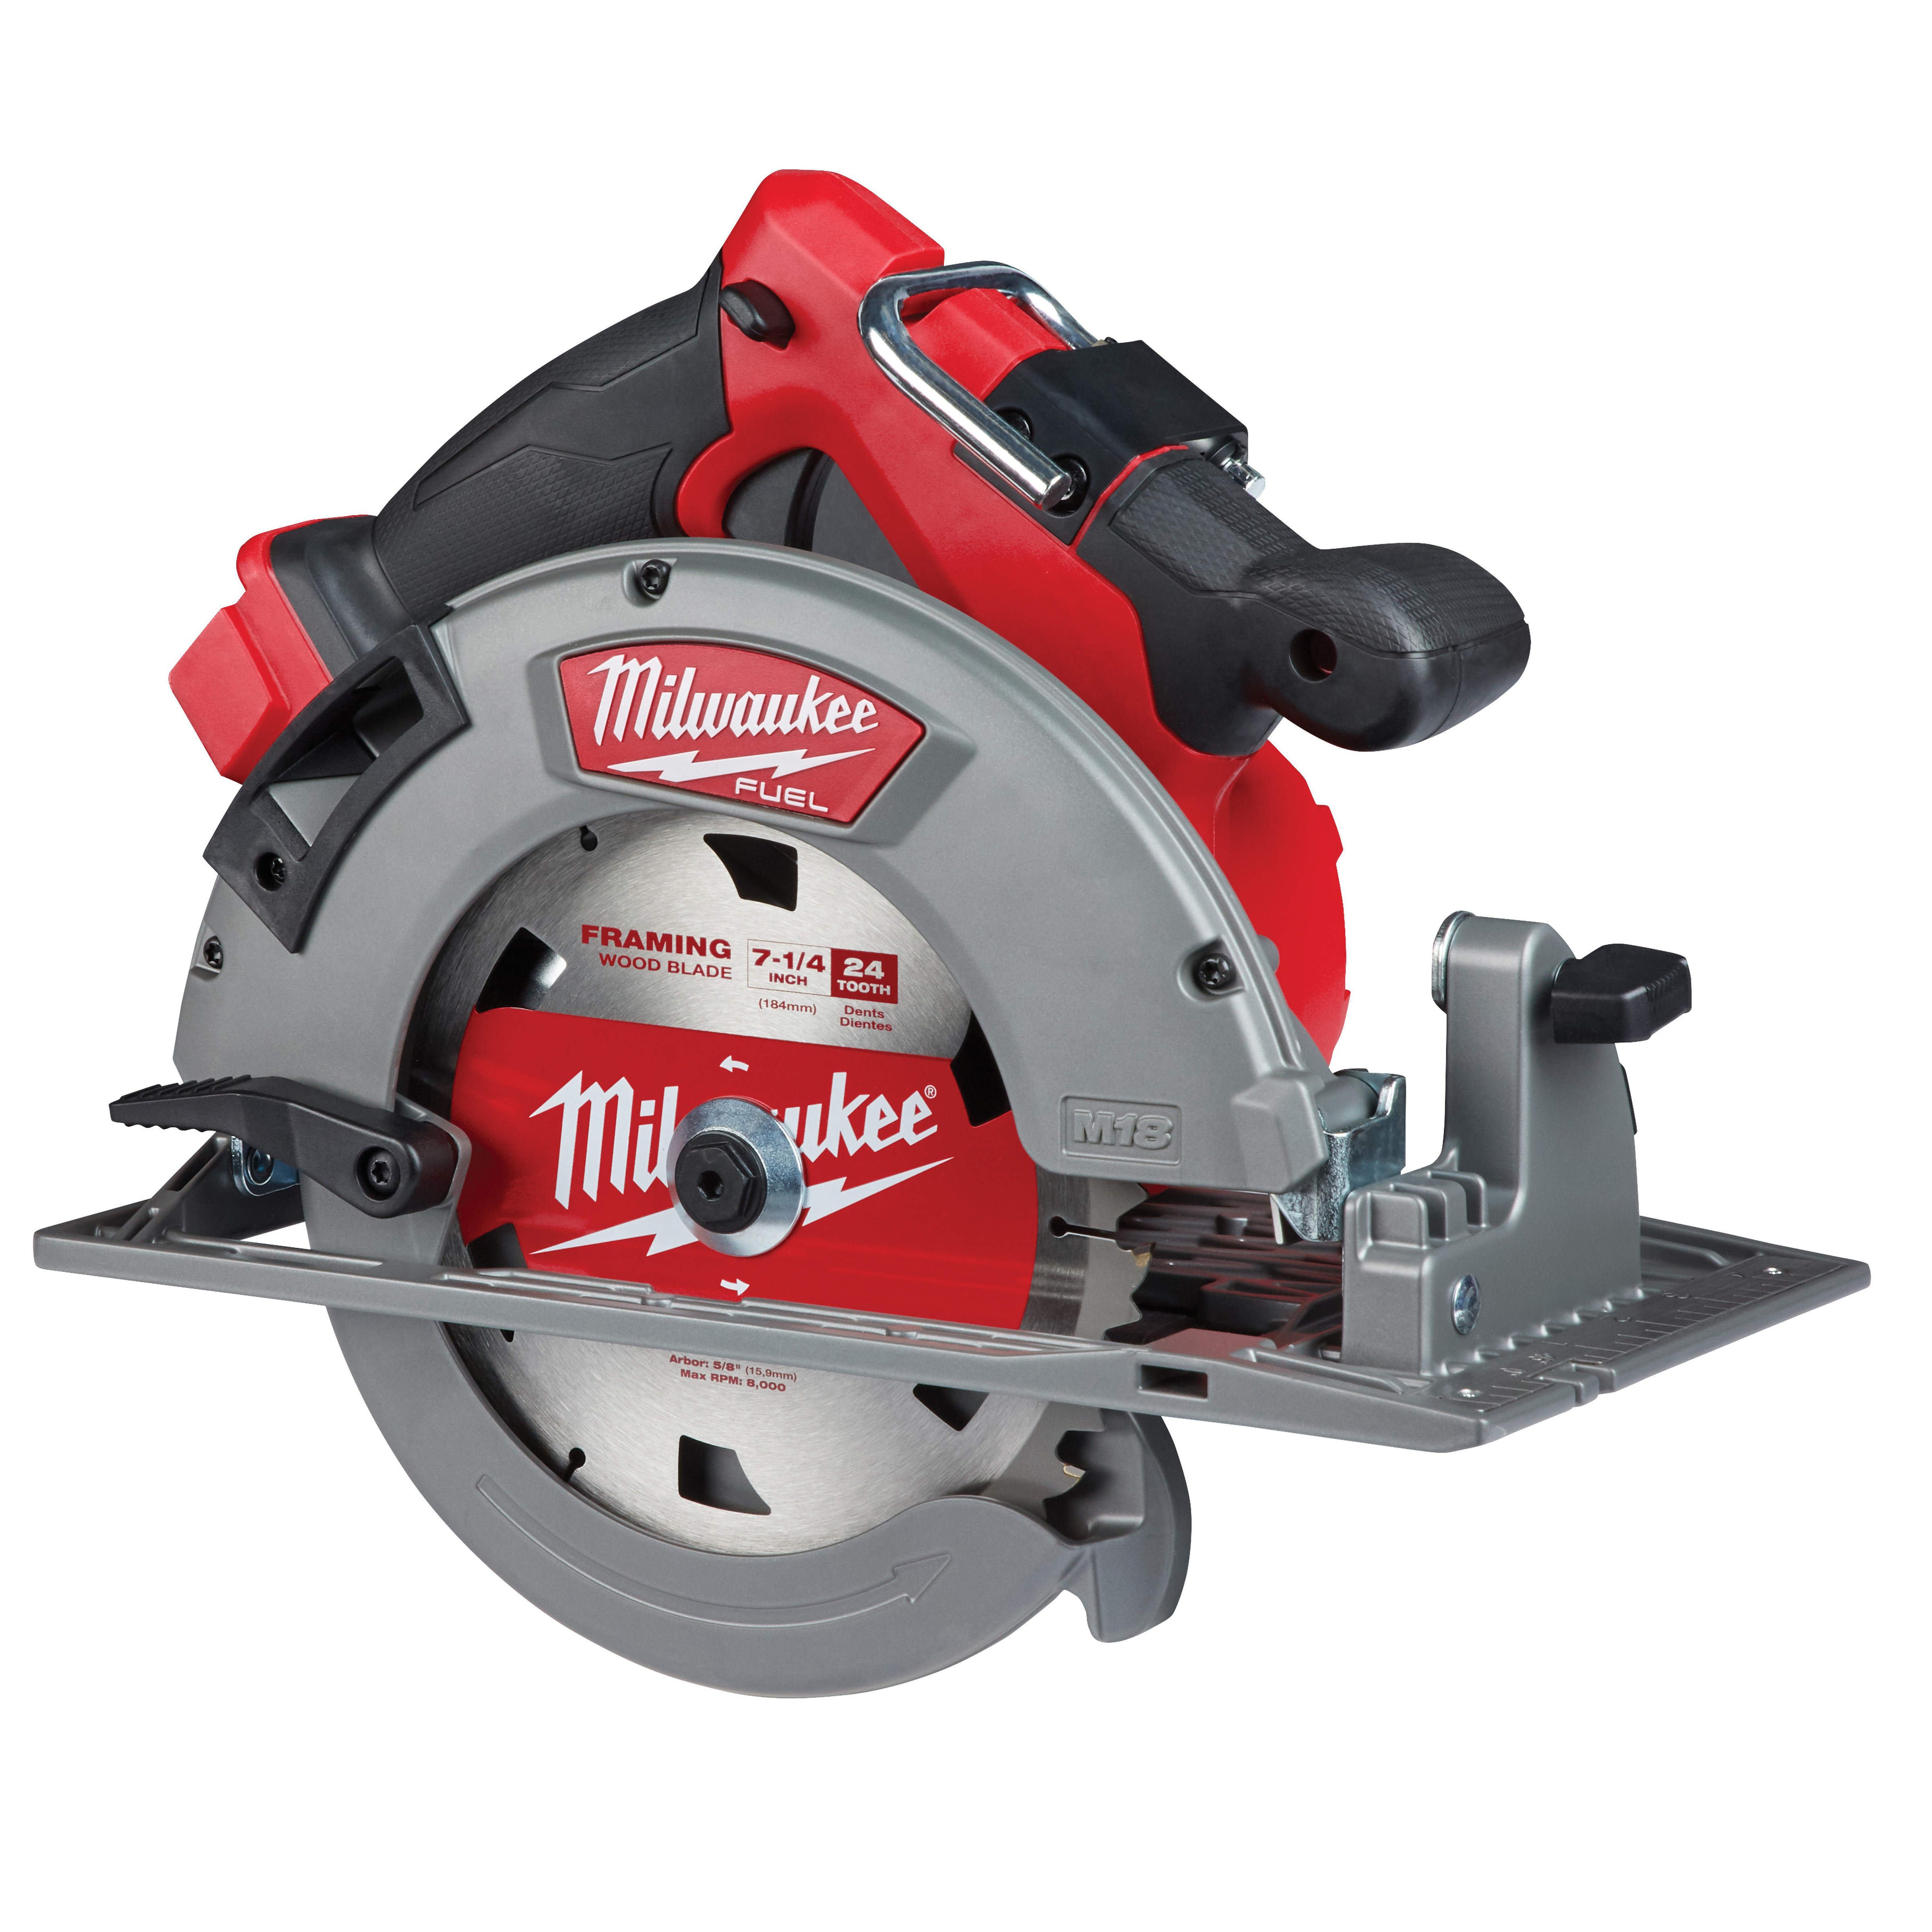 Milwaukee® 2732-20 Circular Saw, Tool/Kit: Tool, 7-1/4 in Dia Blade, 1-7/8 in, 2-1/2 in D Cutting, 18 VDC